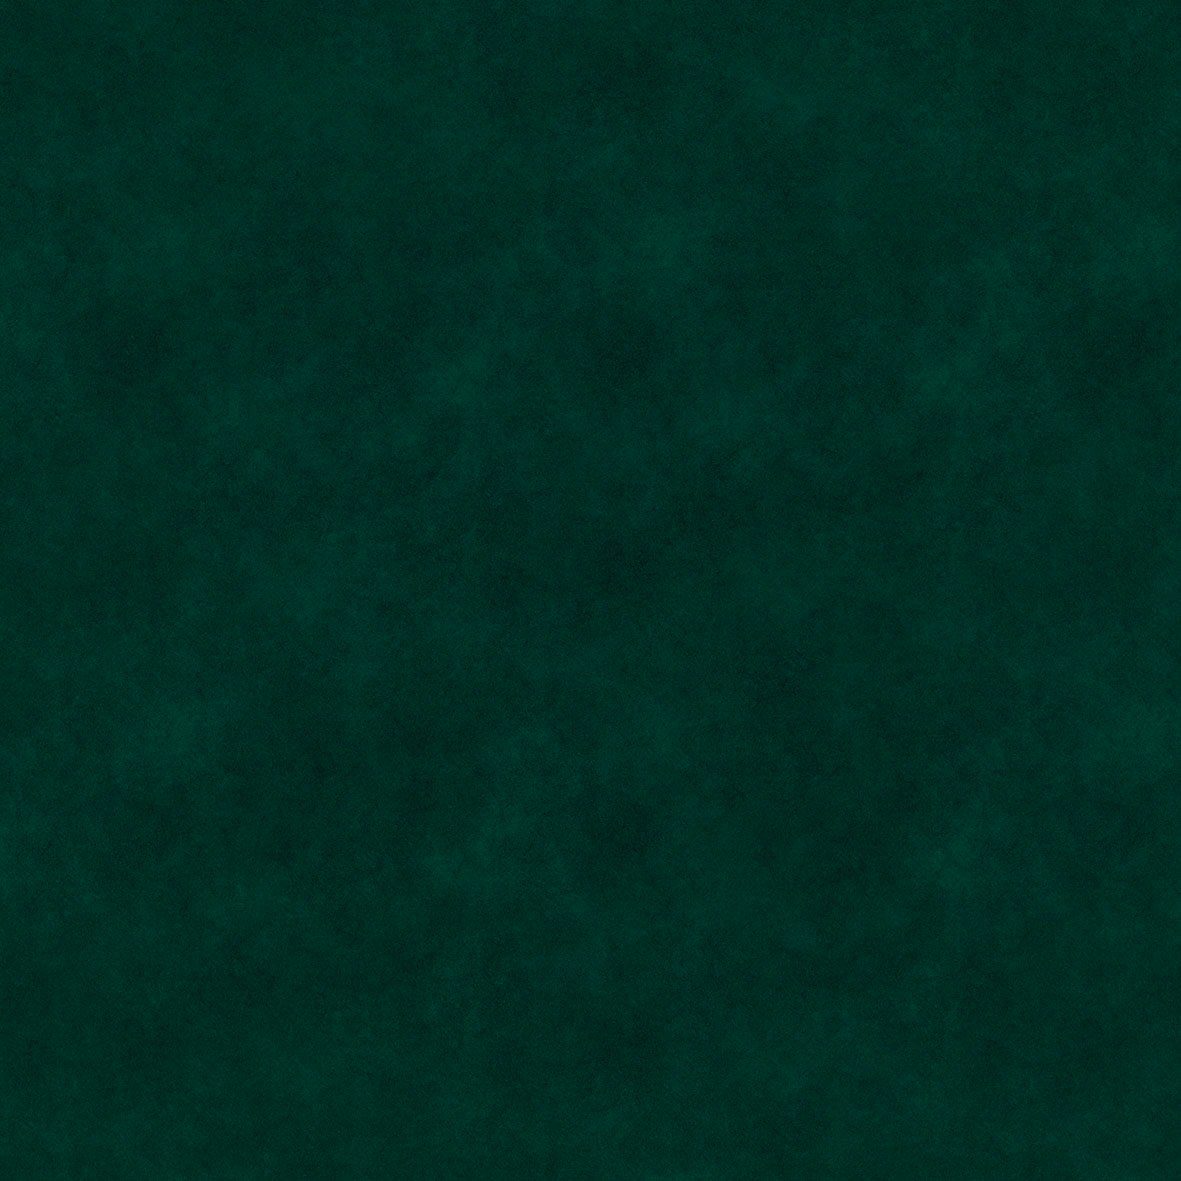 Dorel Home Ecksofa Perry, Rückenlehne, 219 dunkelgrün Farbvarianten, 43 Sitzhöhe cm, Breite cm verschiedene